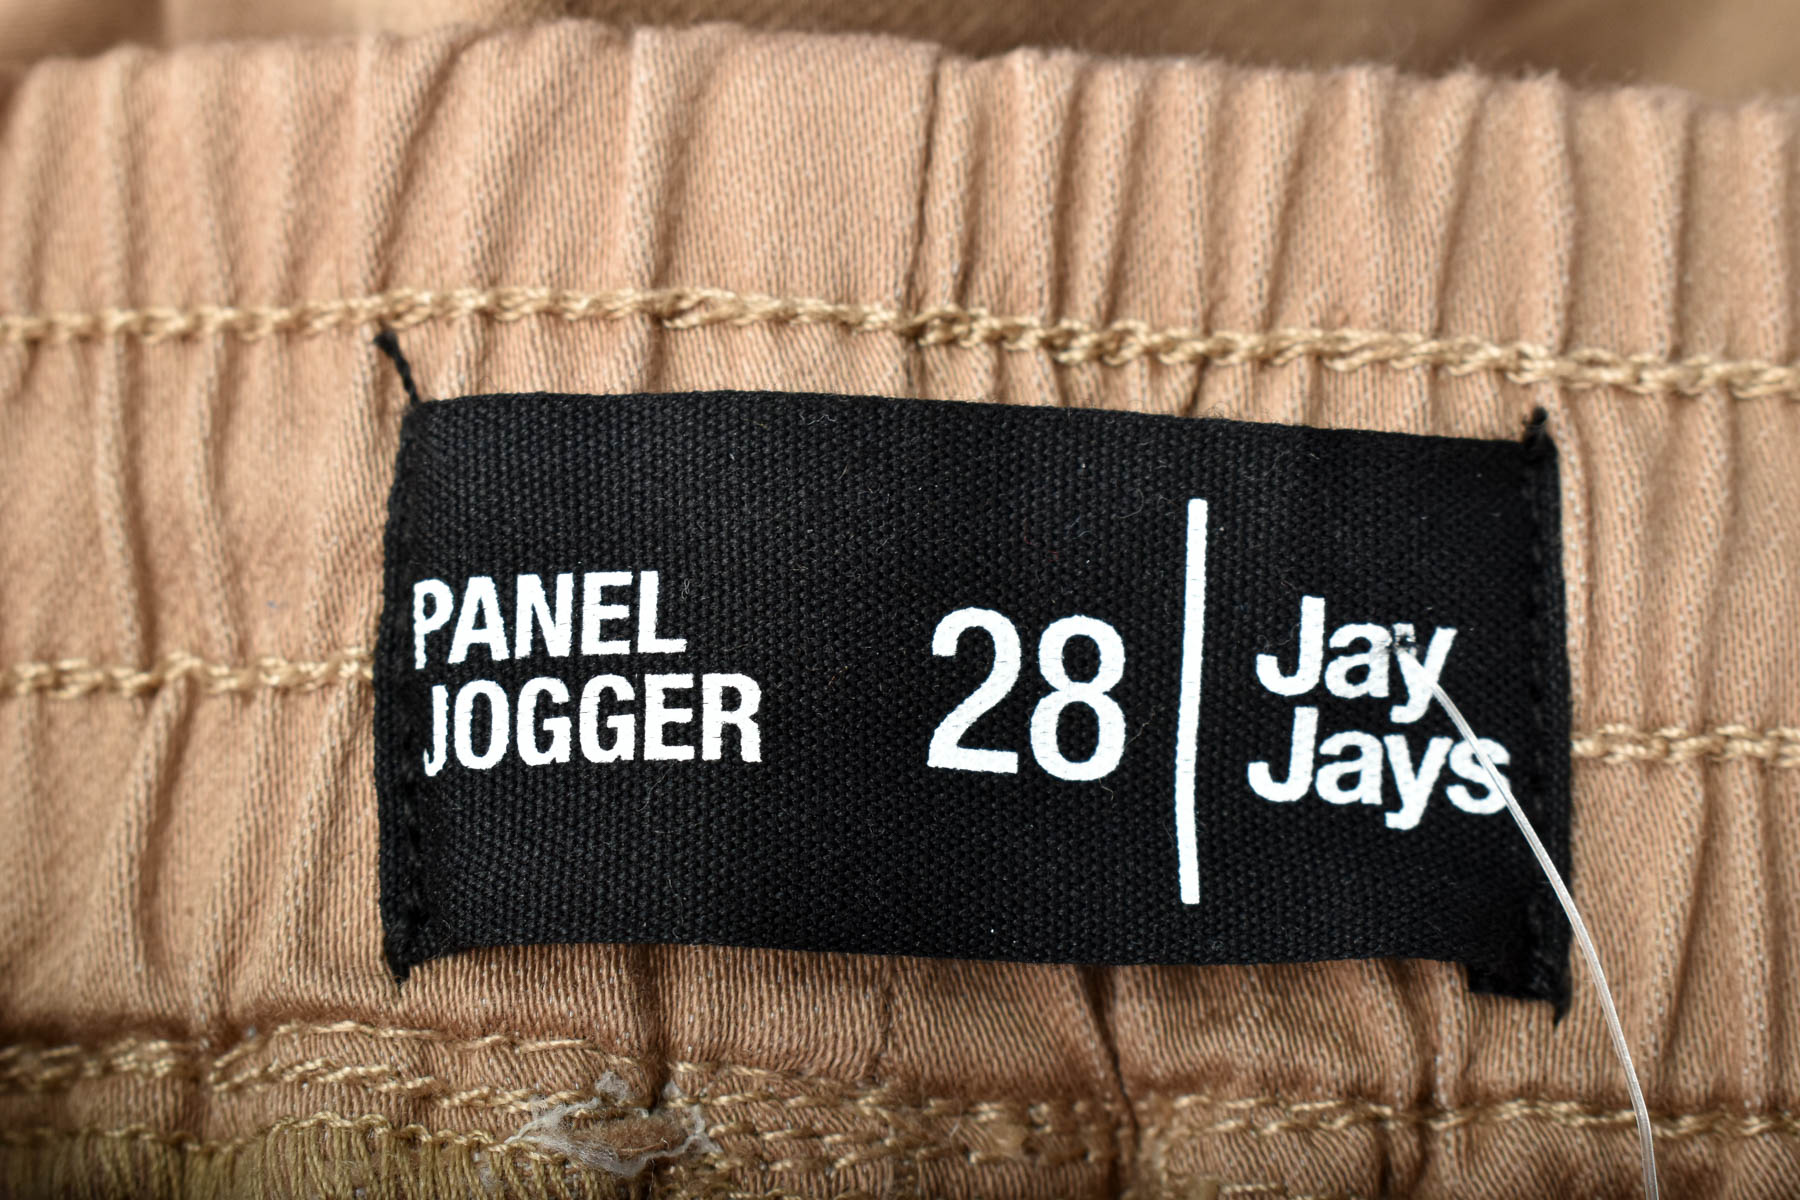 Ανδρικά παντελόνια - Jay Jays - 2